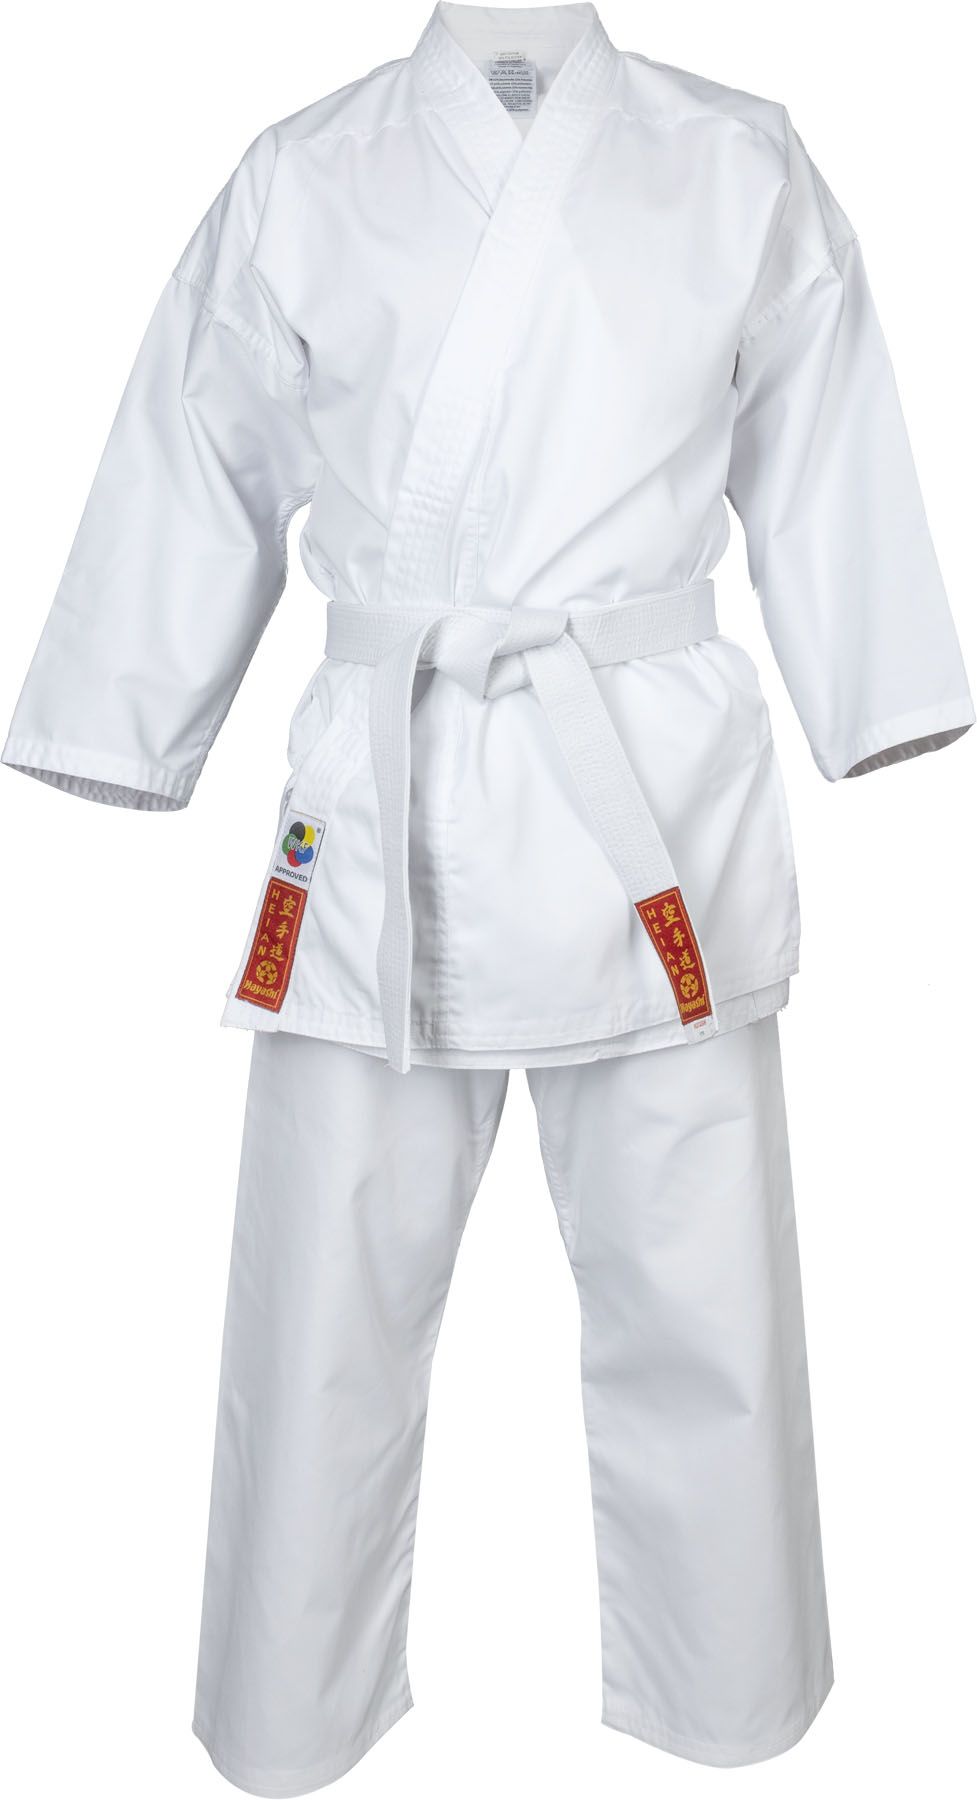 Supera Kinder Karate Anzug weiß Karateanzug mit weißem Gürtel 3 Teiliger Karate Gi mit Karatehose Jacke und Karate Gürtel.